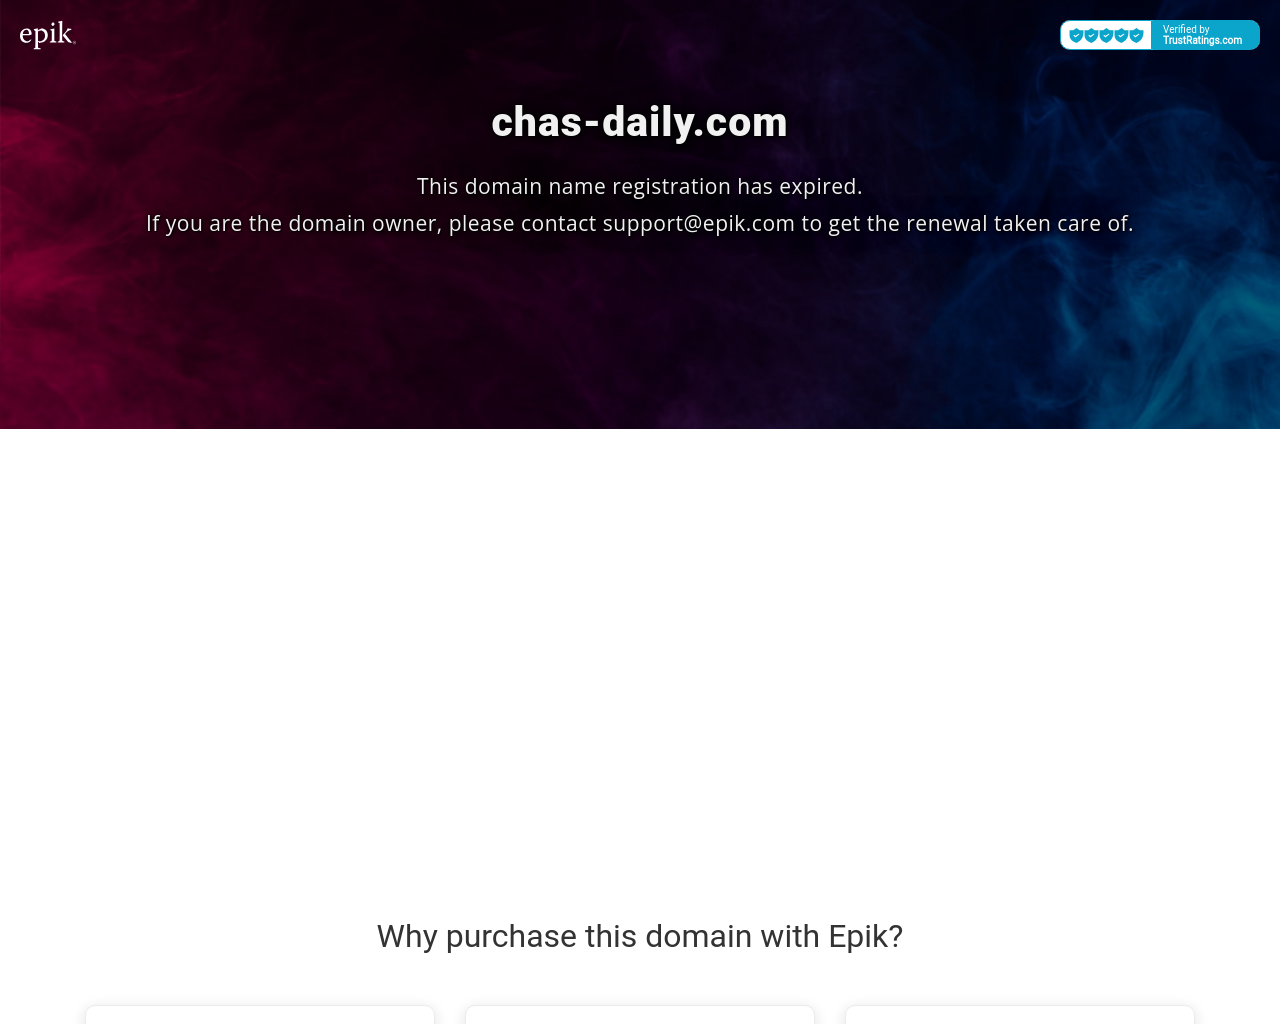 chas-daily.com